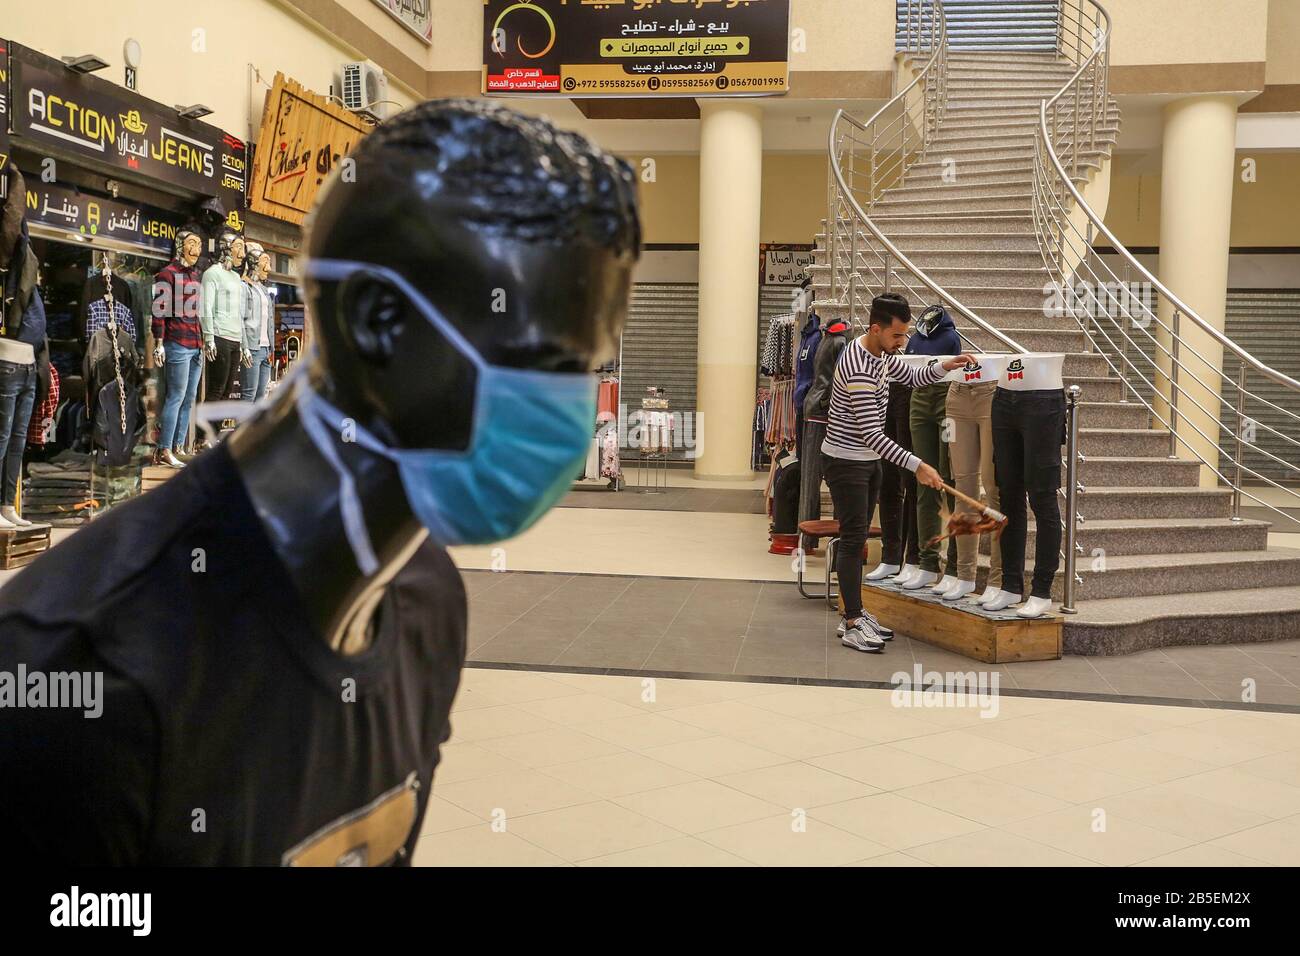 El 8 de marzo de 2020, se exhibió maniquíes con máscaras faciales fuera de una tienda de ropa, en la Franja de Gaza, para difundir la conciencia sobre la enfermedad coronavirus COVID-19, Foto de stock